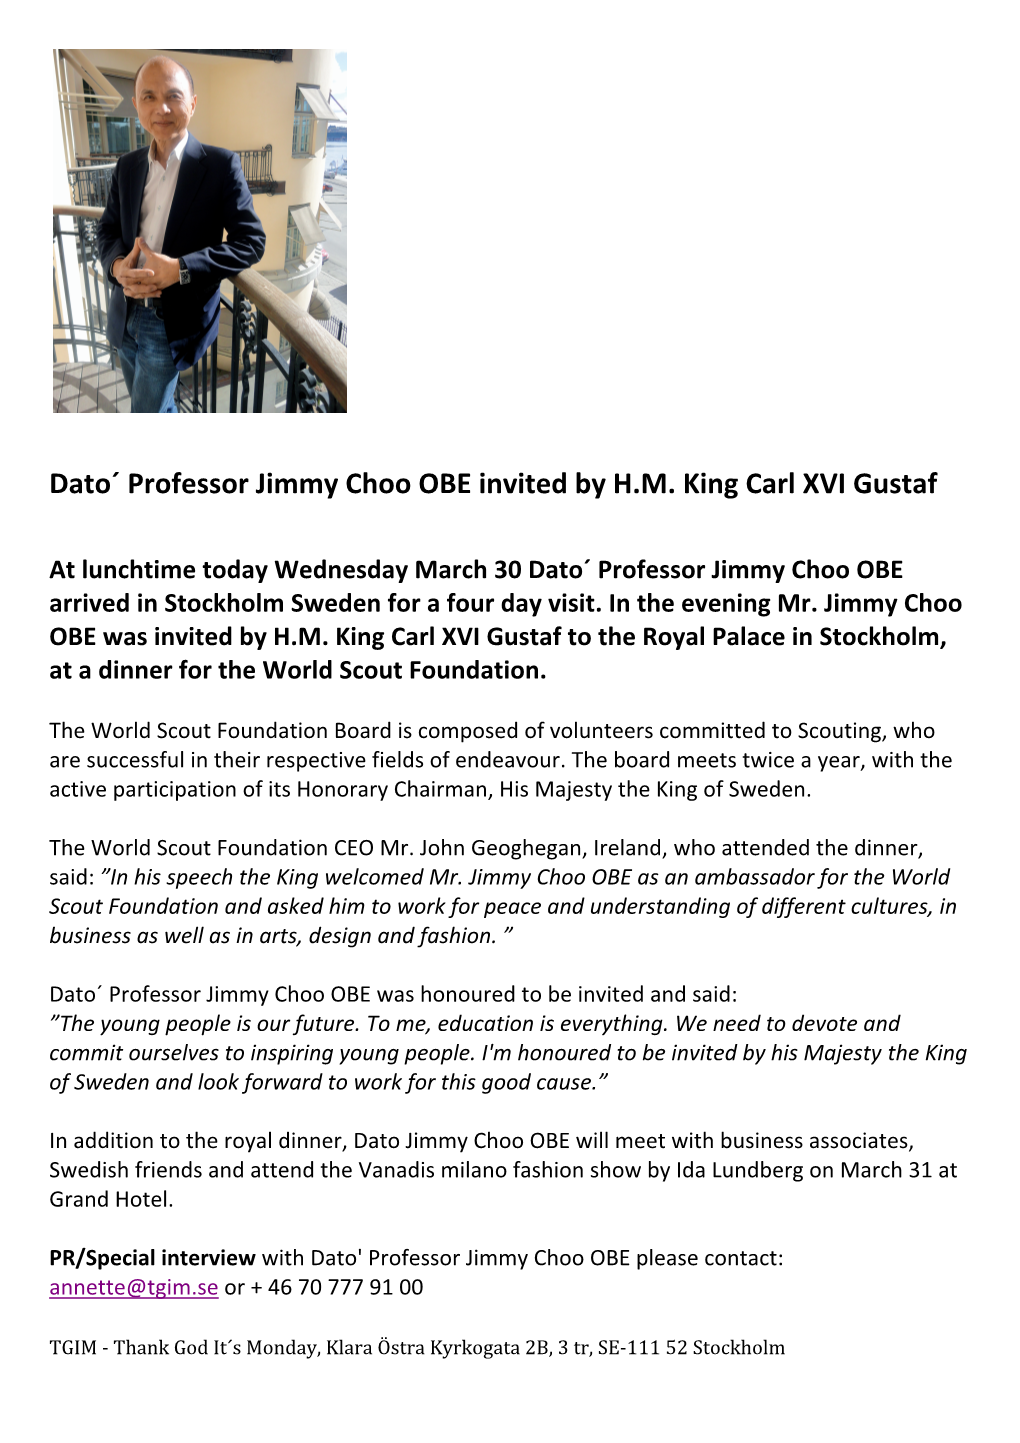 Jimmy Choo OBE Invited by H.M. King Carl XVI Gustaf